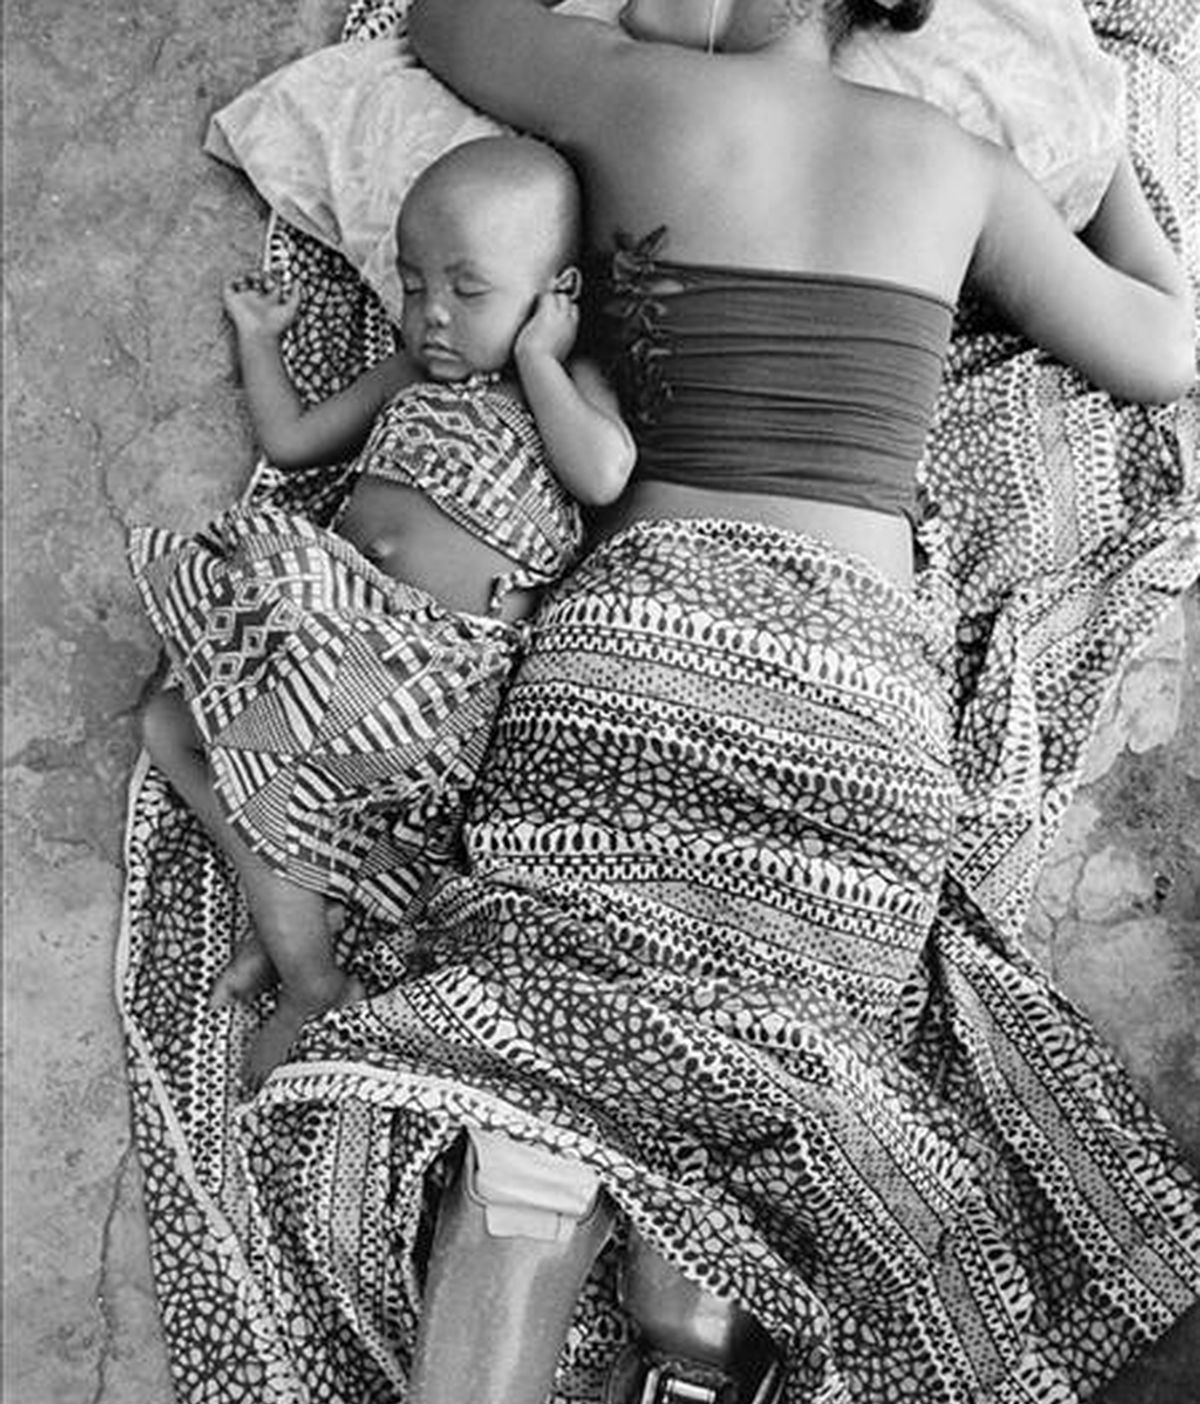 Fotografía tomada en febrero de 2007 por el fotógrafo español Gervasio Sánchez que muestra a Sofía Elface Fumo, quién perdió ambas piernas por una explosión de mina, durmiendo junto a su hija Alia en Massaca (Mozambique). EFE